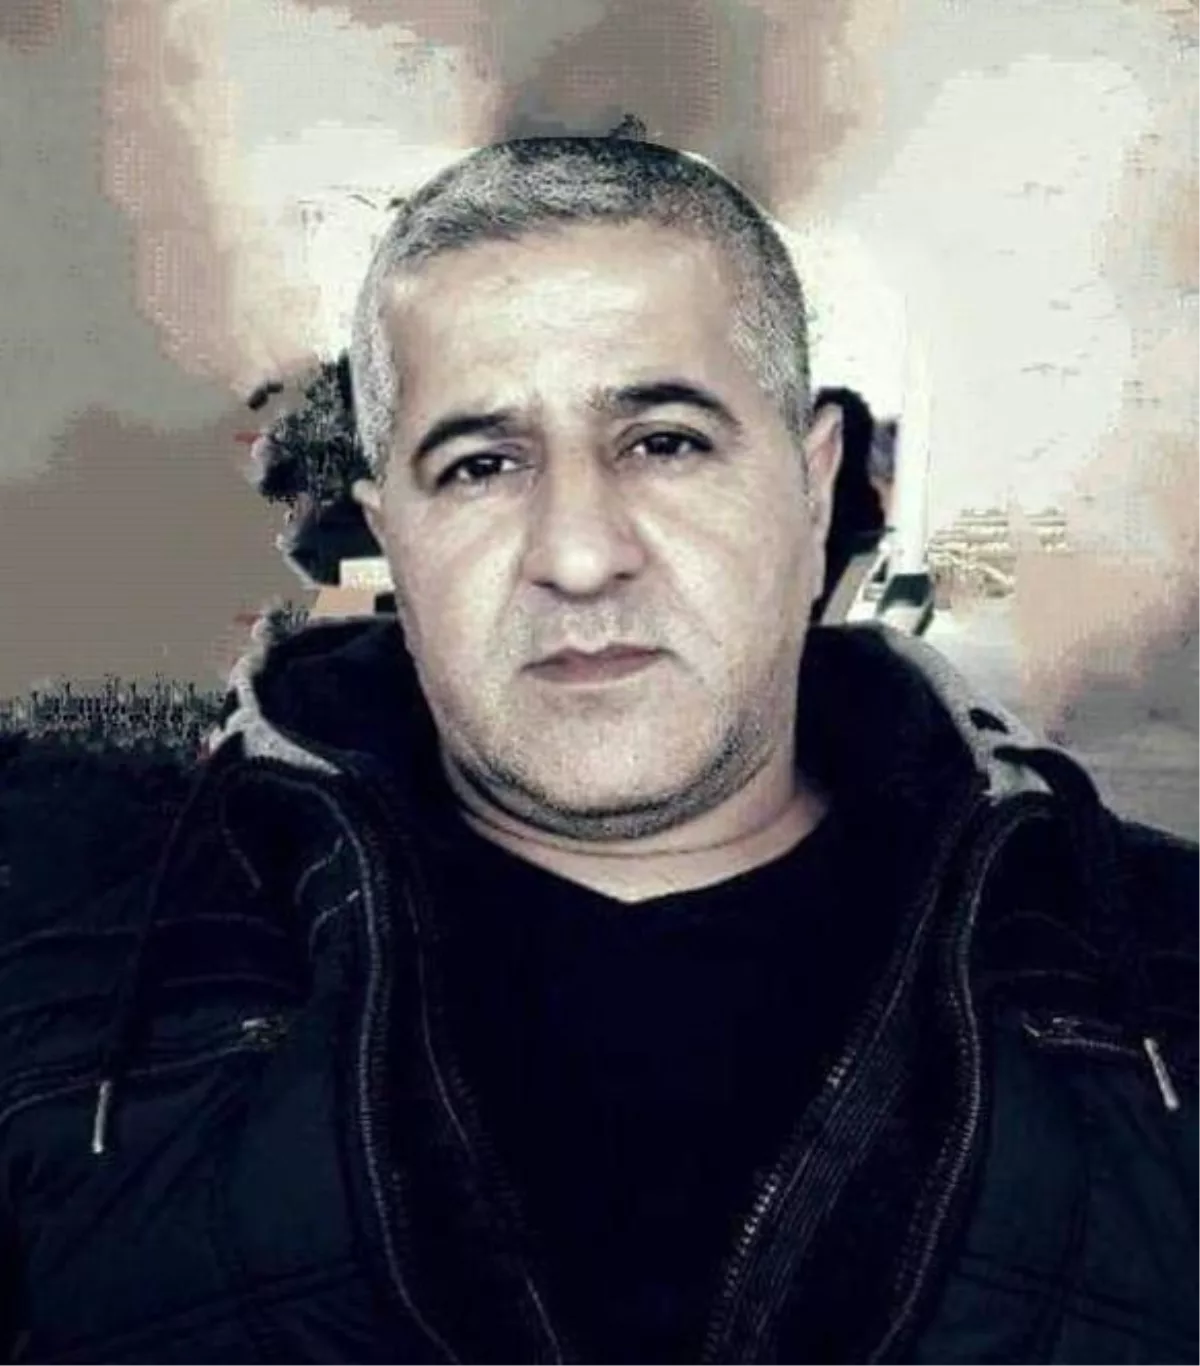 Bursa'da dorsenin altında kalan tamirci hayatını kaybetti